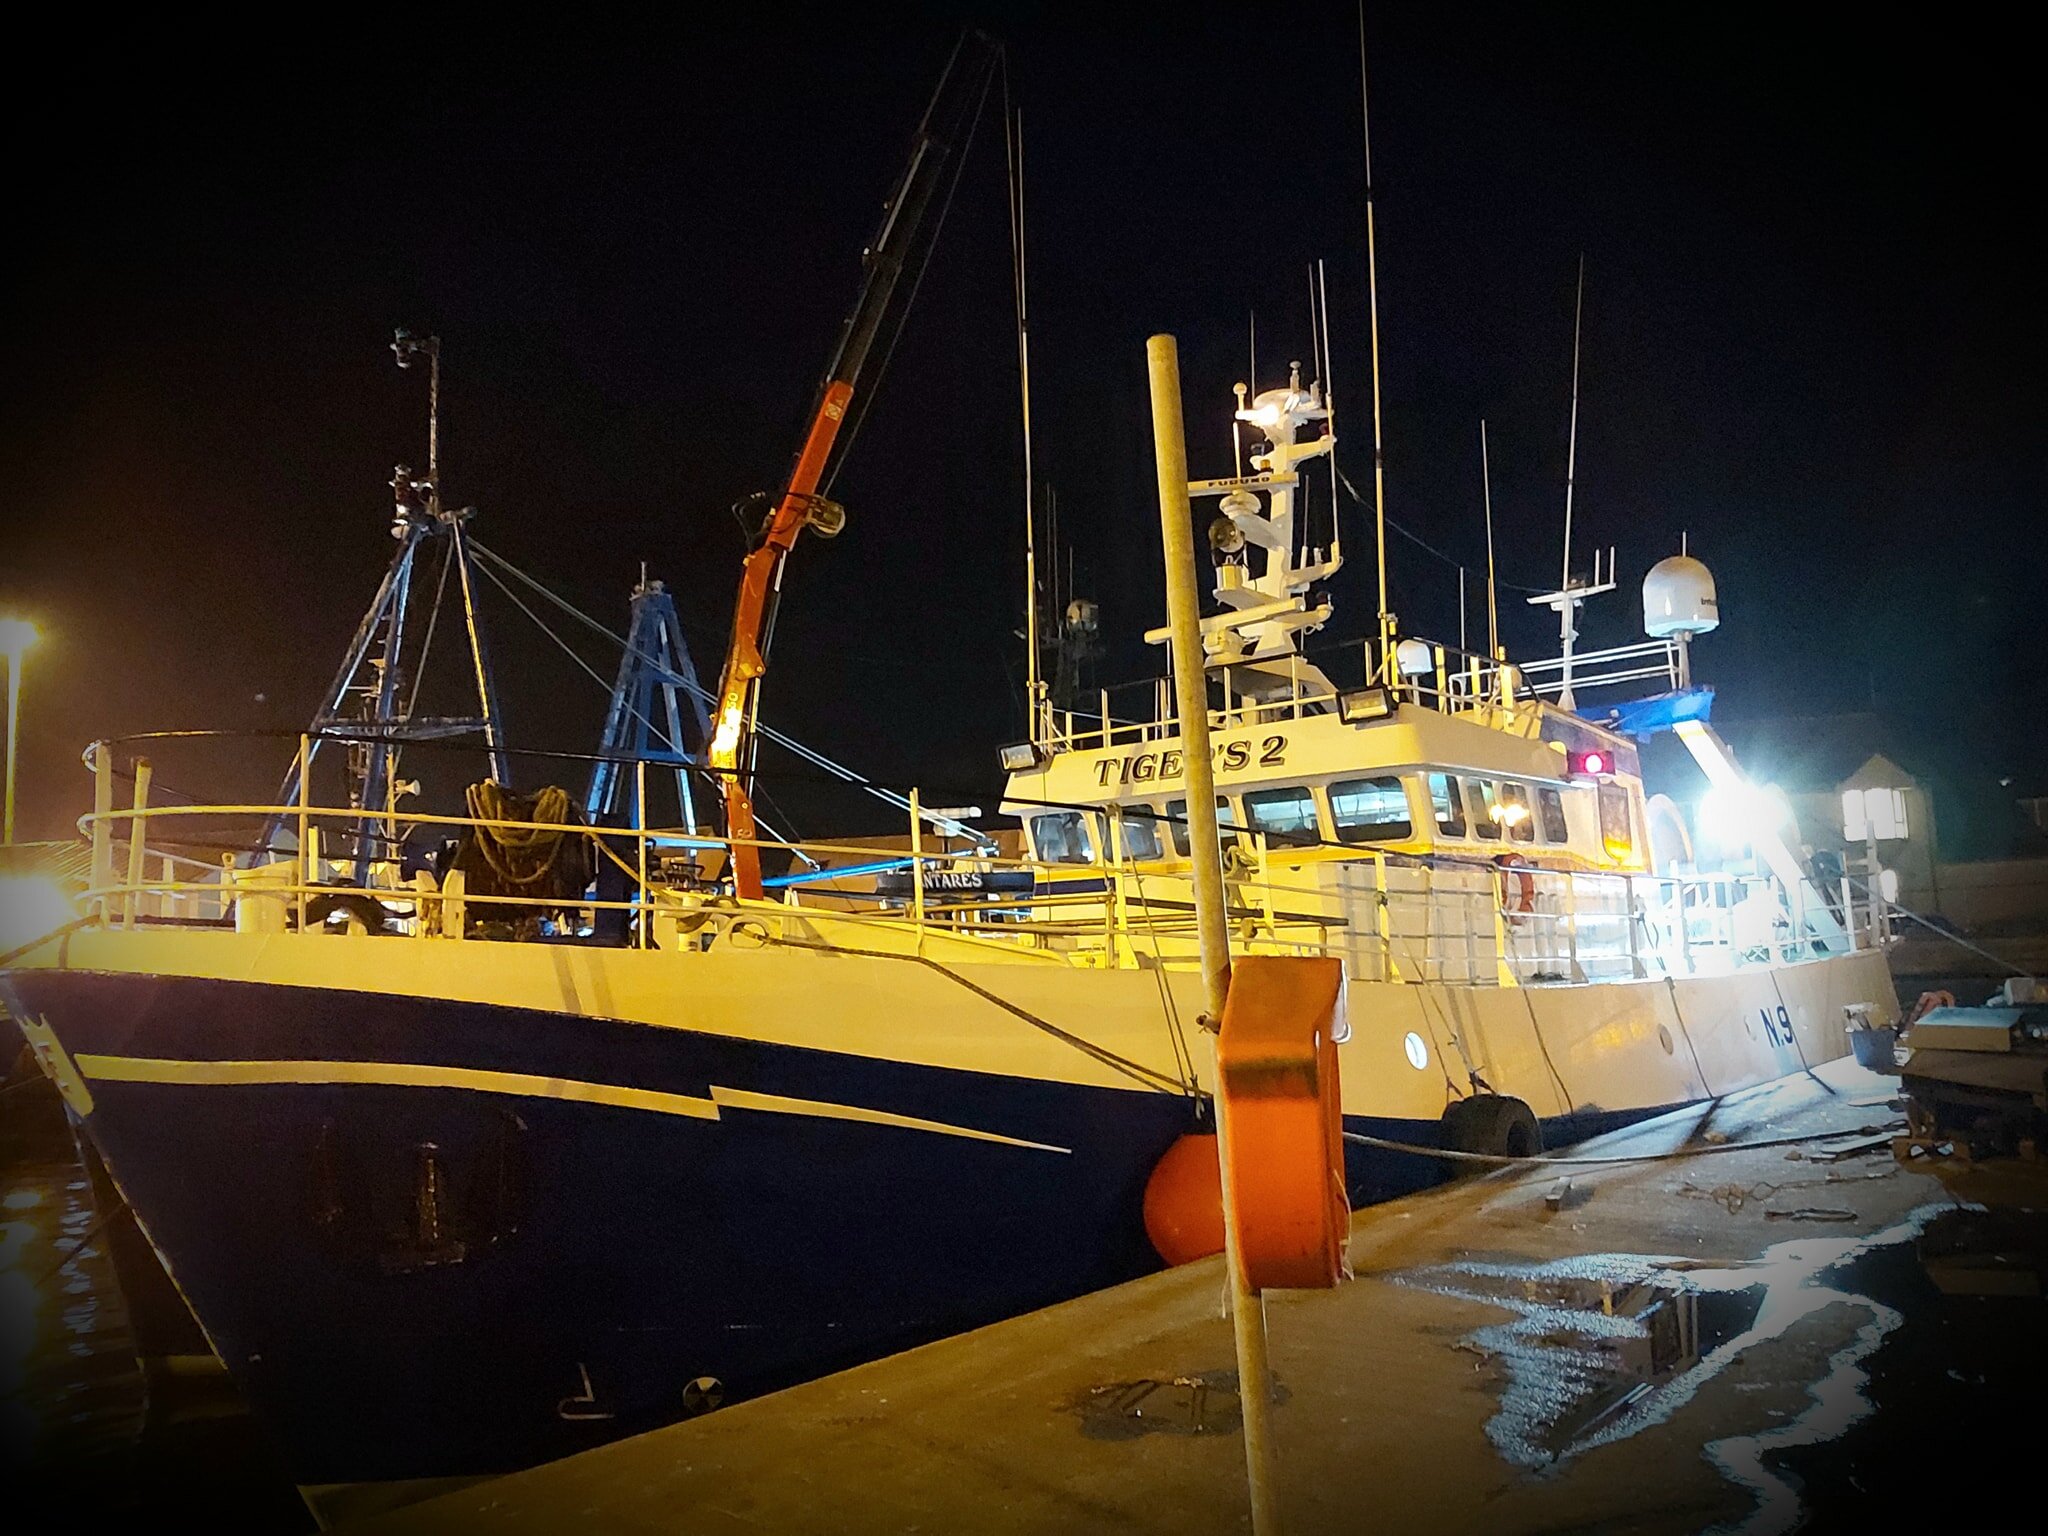 TIGRI IITipo: Metal Hull TrawlerSize: 25 x 8mBuilt: 1986